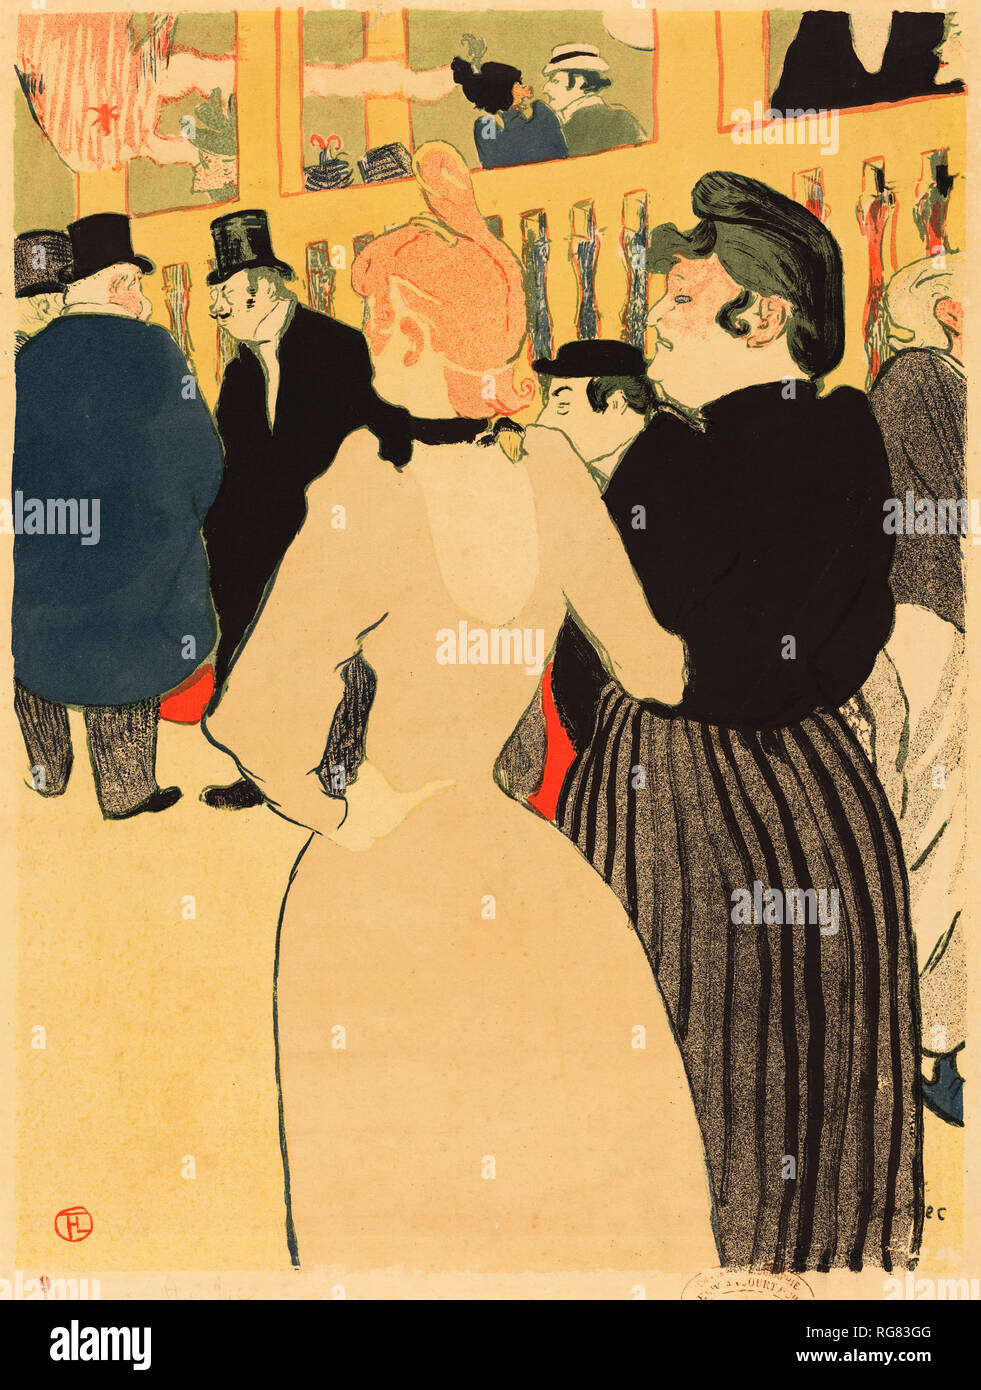 Au Moulin Rouge, la Goulue et sa soeur (au Moulin Rouge, la Goulue et sa soeur)). En date du : 1892. Dimensions : 45,8 x 34,4 image : cm (18 1/16 x 13 9/16 in.) 49,7 x 37,4 feuille : 19 cm (14 9/16 x 3/4 in.). Médium : Lithographie. Musée : National Gallery of Art, Washington DC. Auteur : Henri de Toulouse-Lautrec. TOULOUSE-LAUTREC, HENRI DE. Banque D'Images